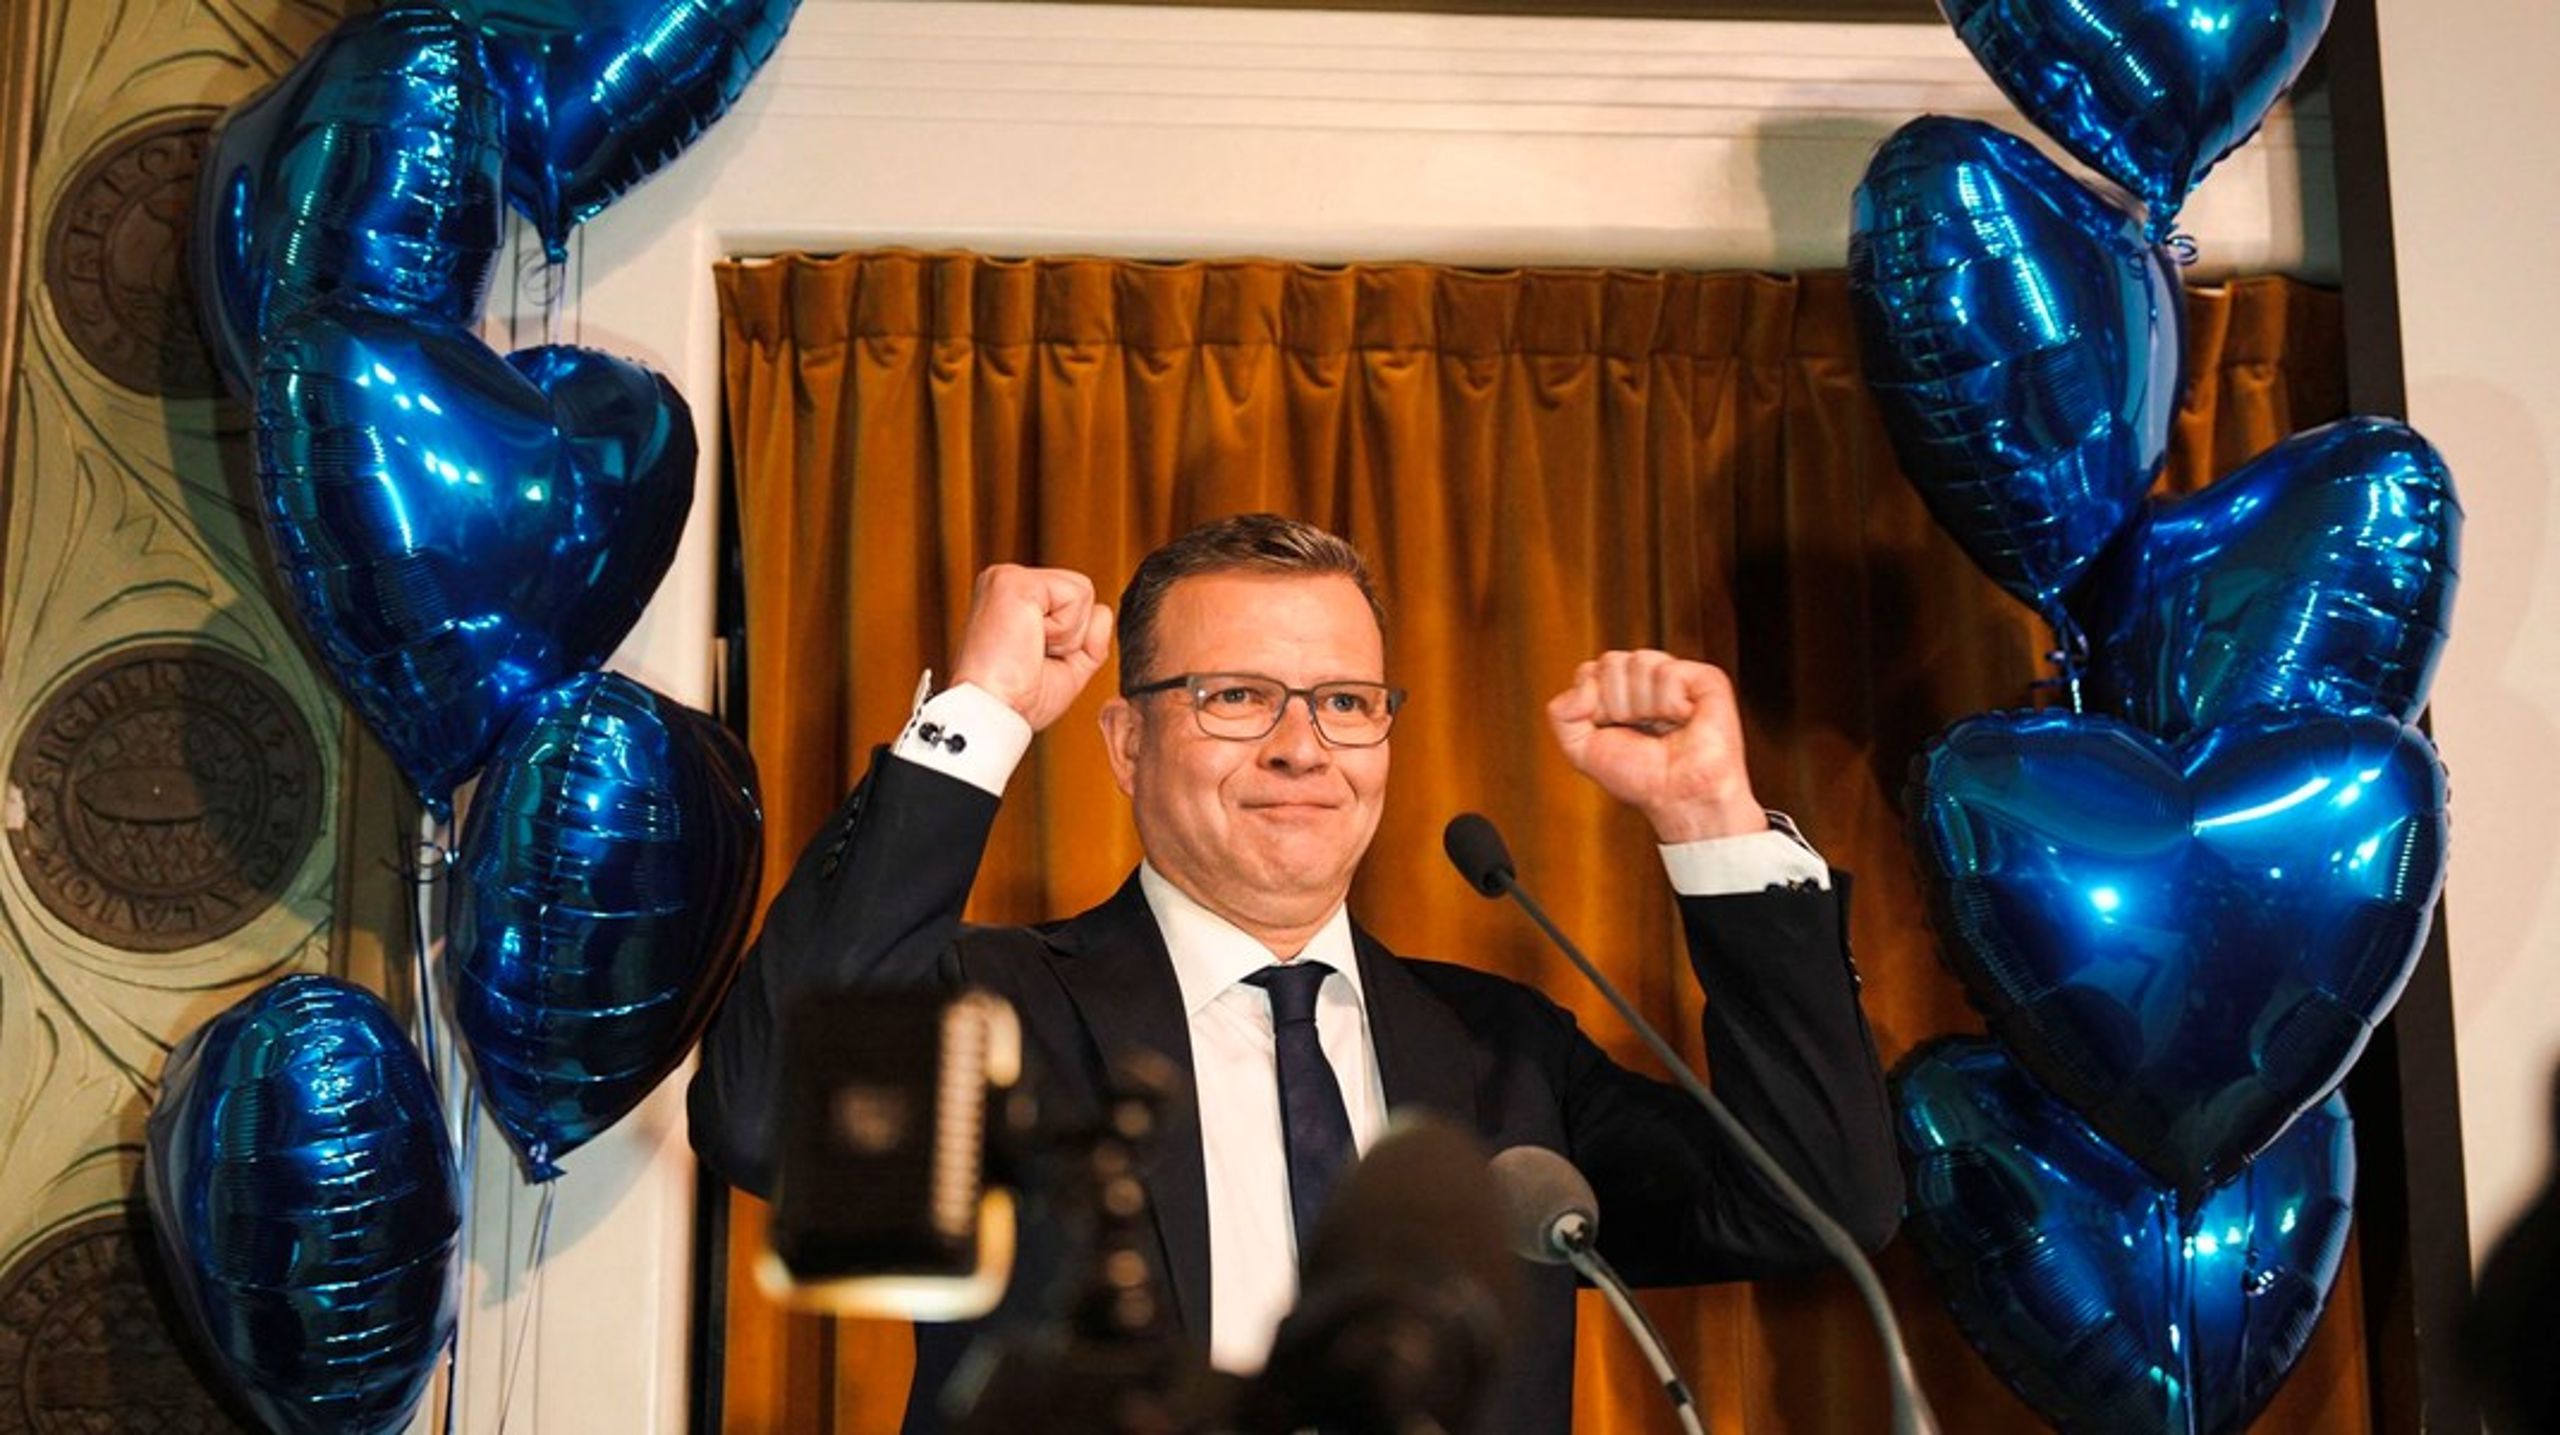 Konservative Petteri Orpo ser ud til at kunne sætte sig i Finlands statsministerium, efter hans parti blev størst ved søndagens valg. Men først venter svære koalitionsforhandlinger.